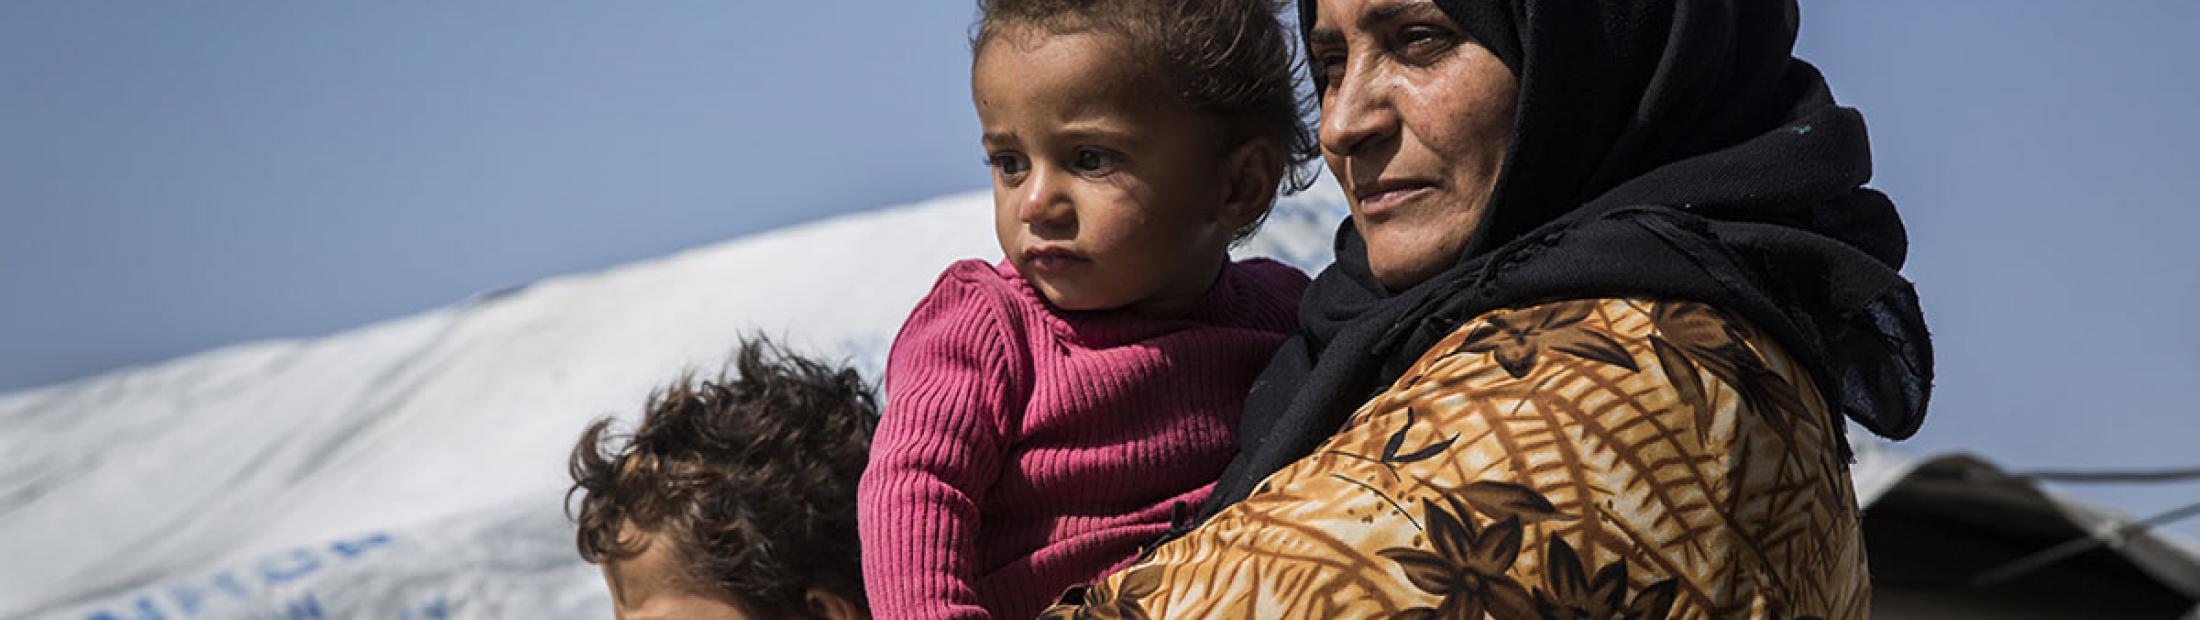 Desplazados sirios: 5 años sobreviviendo al horror de la guerra en Siria